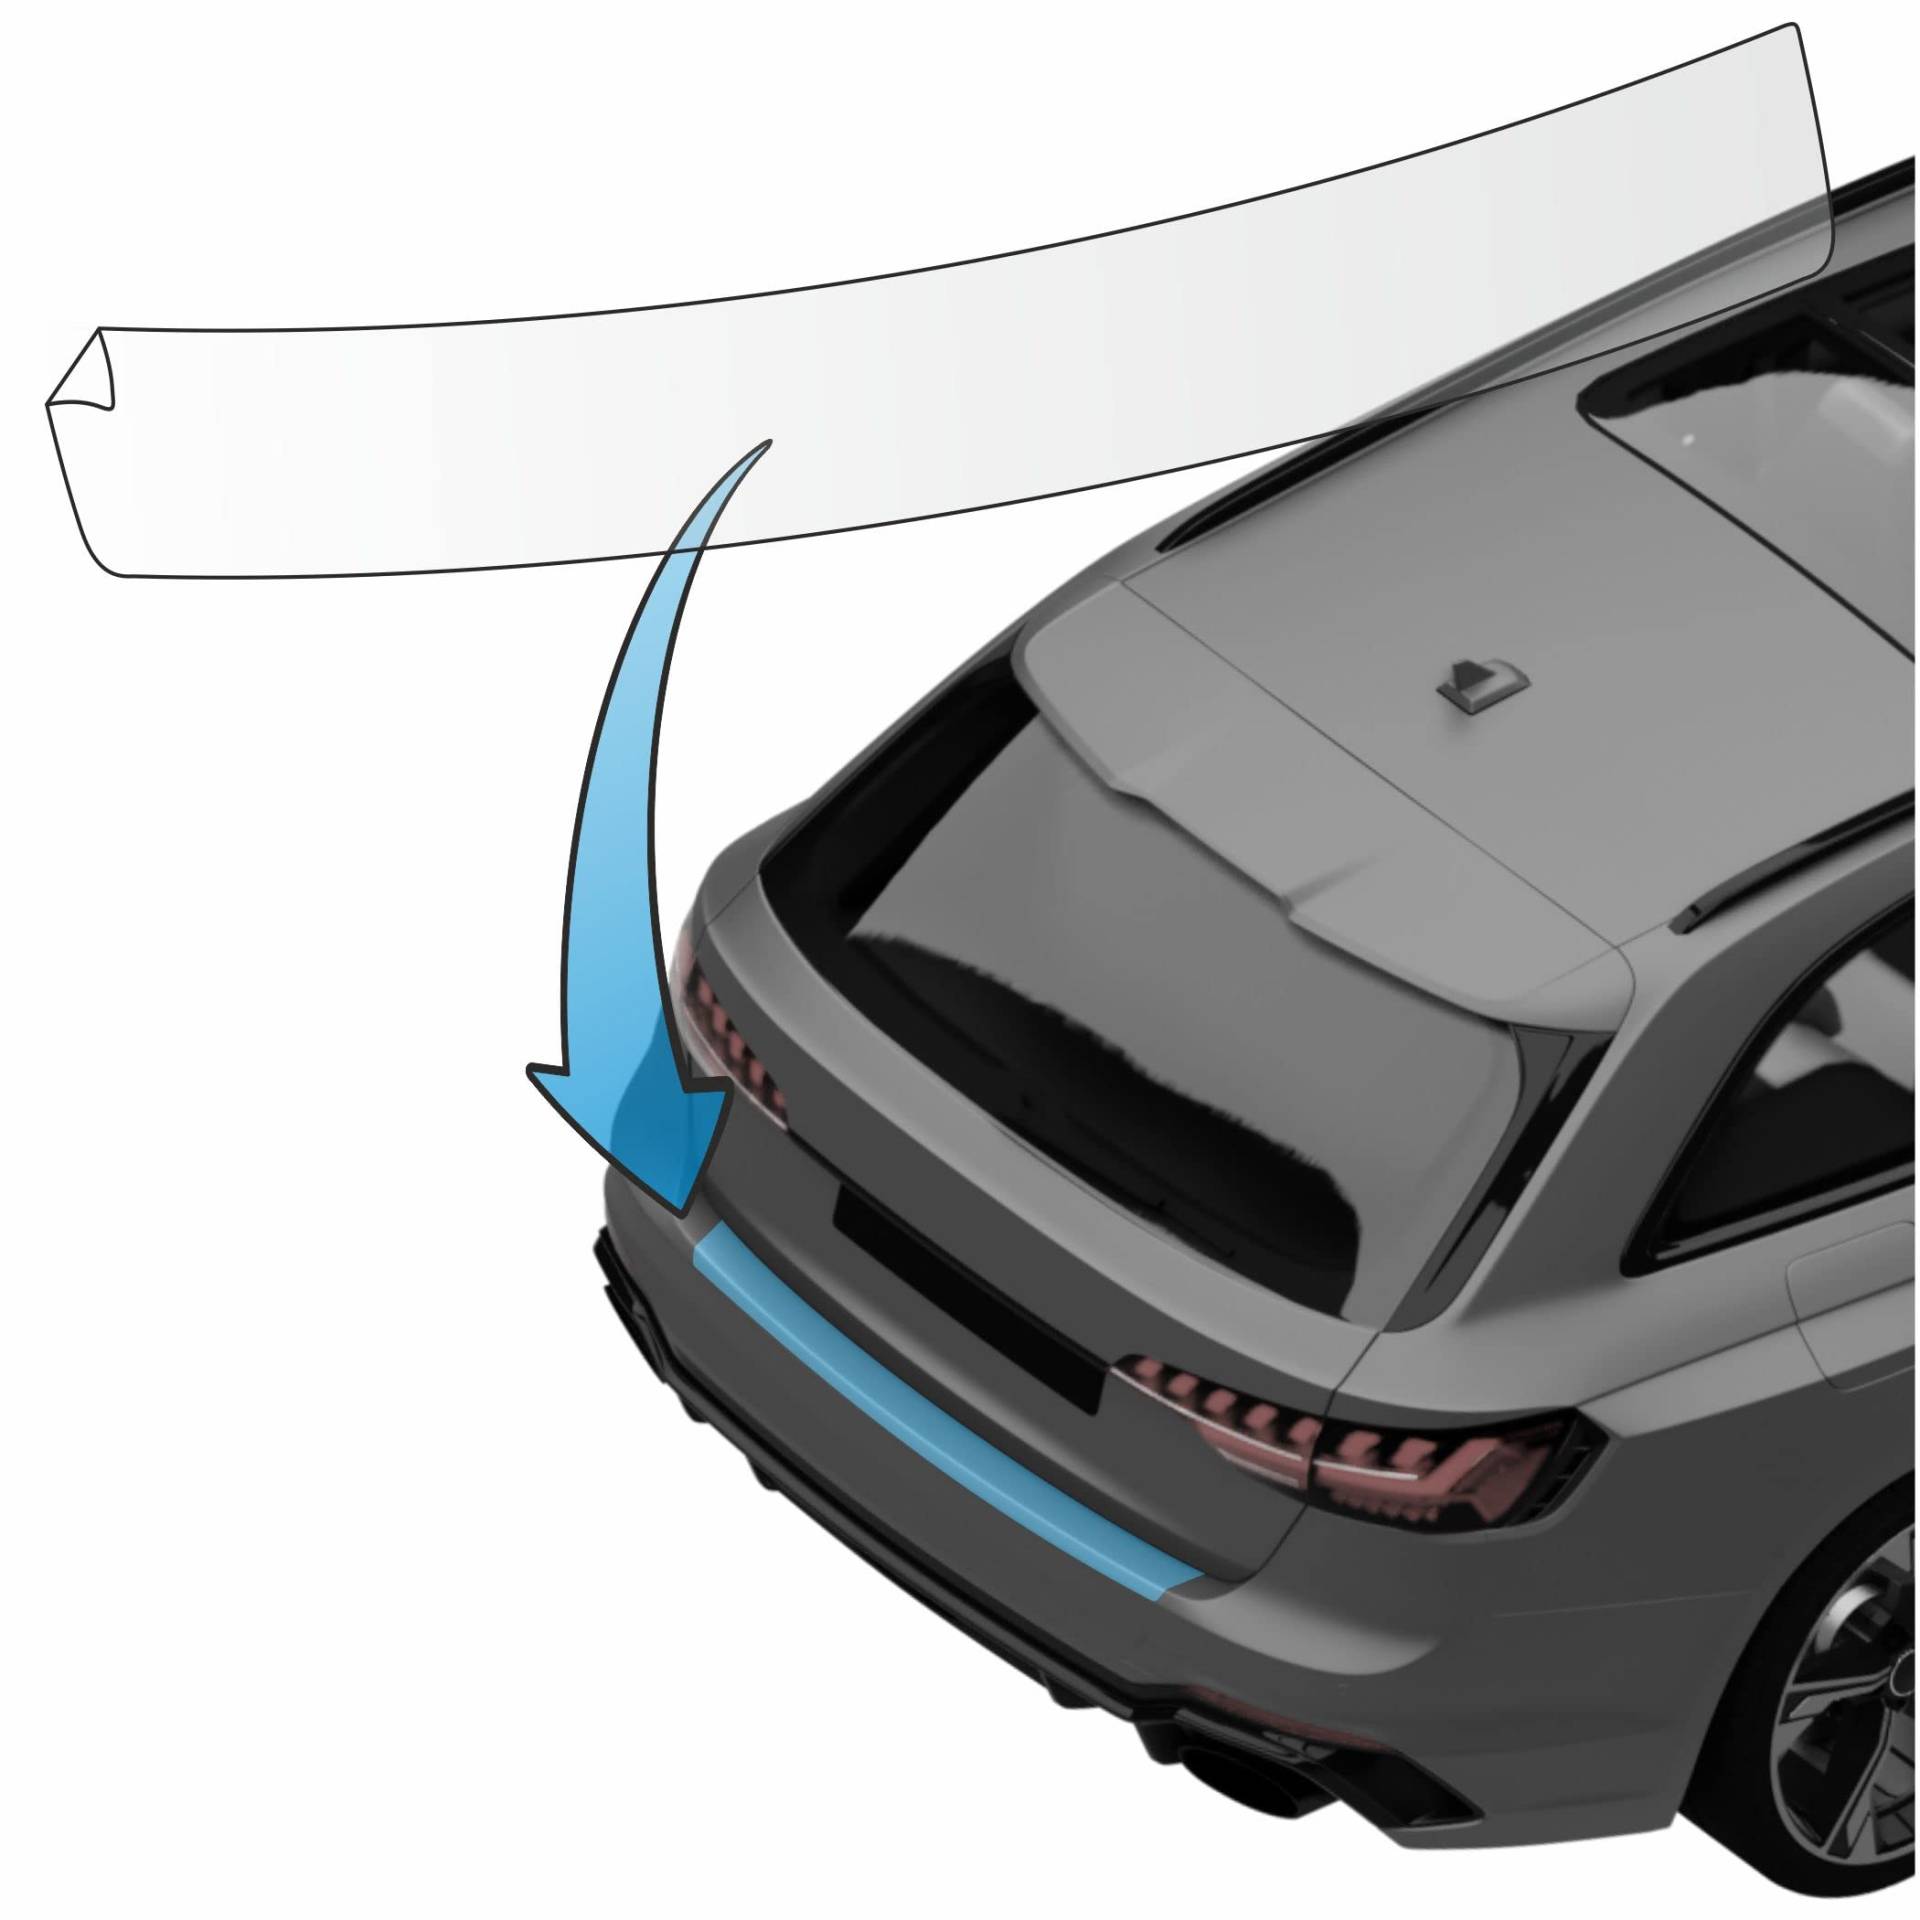 MisterLacky – Lackschutzfolie mit Rakel als Ladekantenschutz Folie passend für Toyota C-HR Typ X1, ab BJ 01/2017 in transparent (320µm) von Lackschutzshop